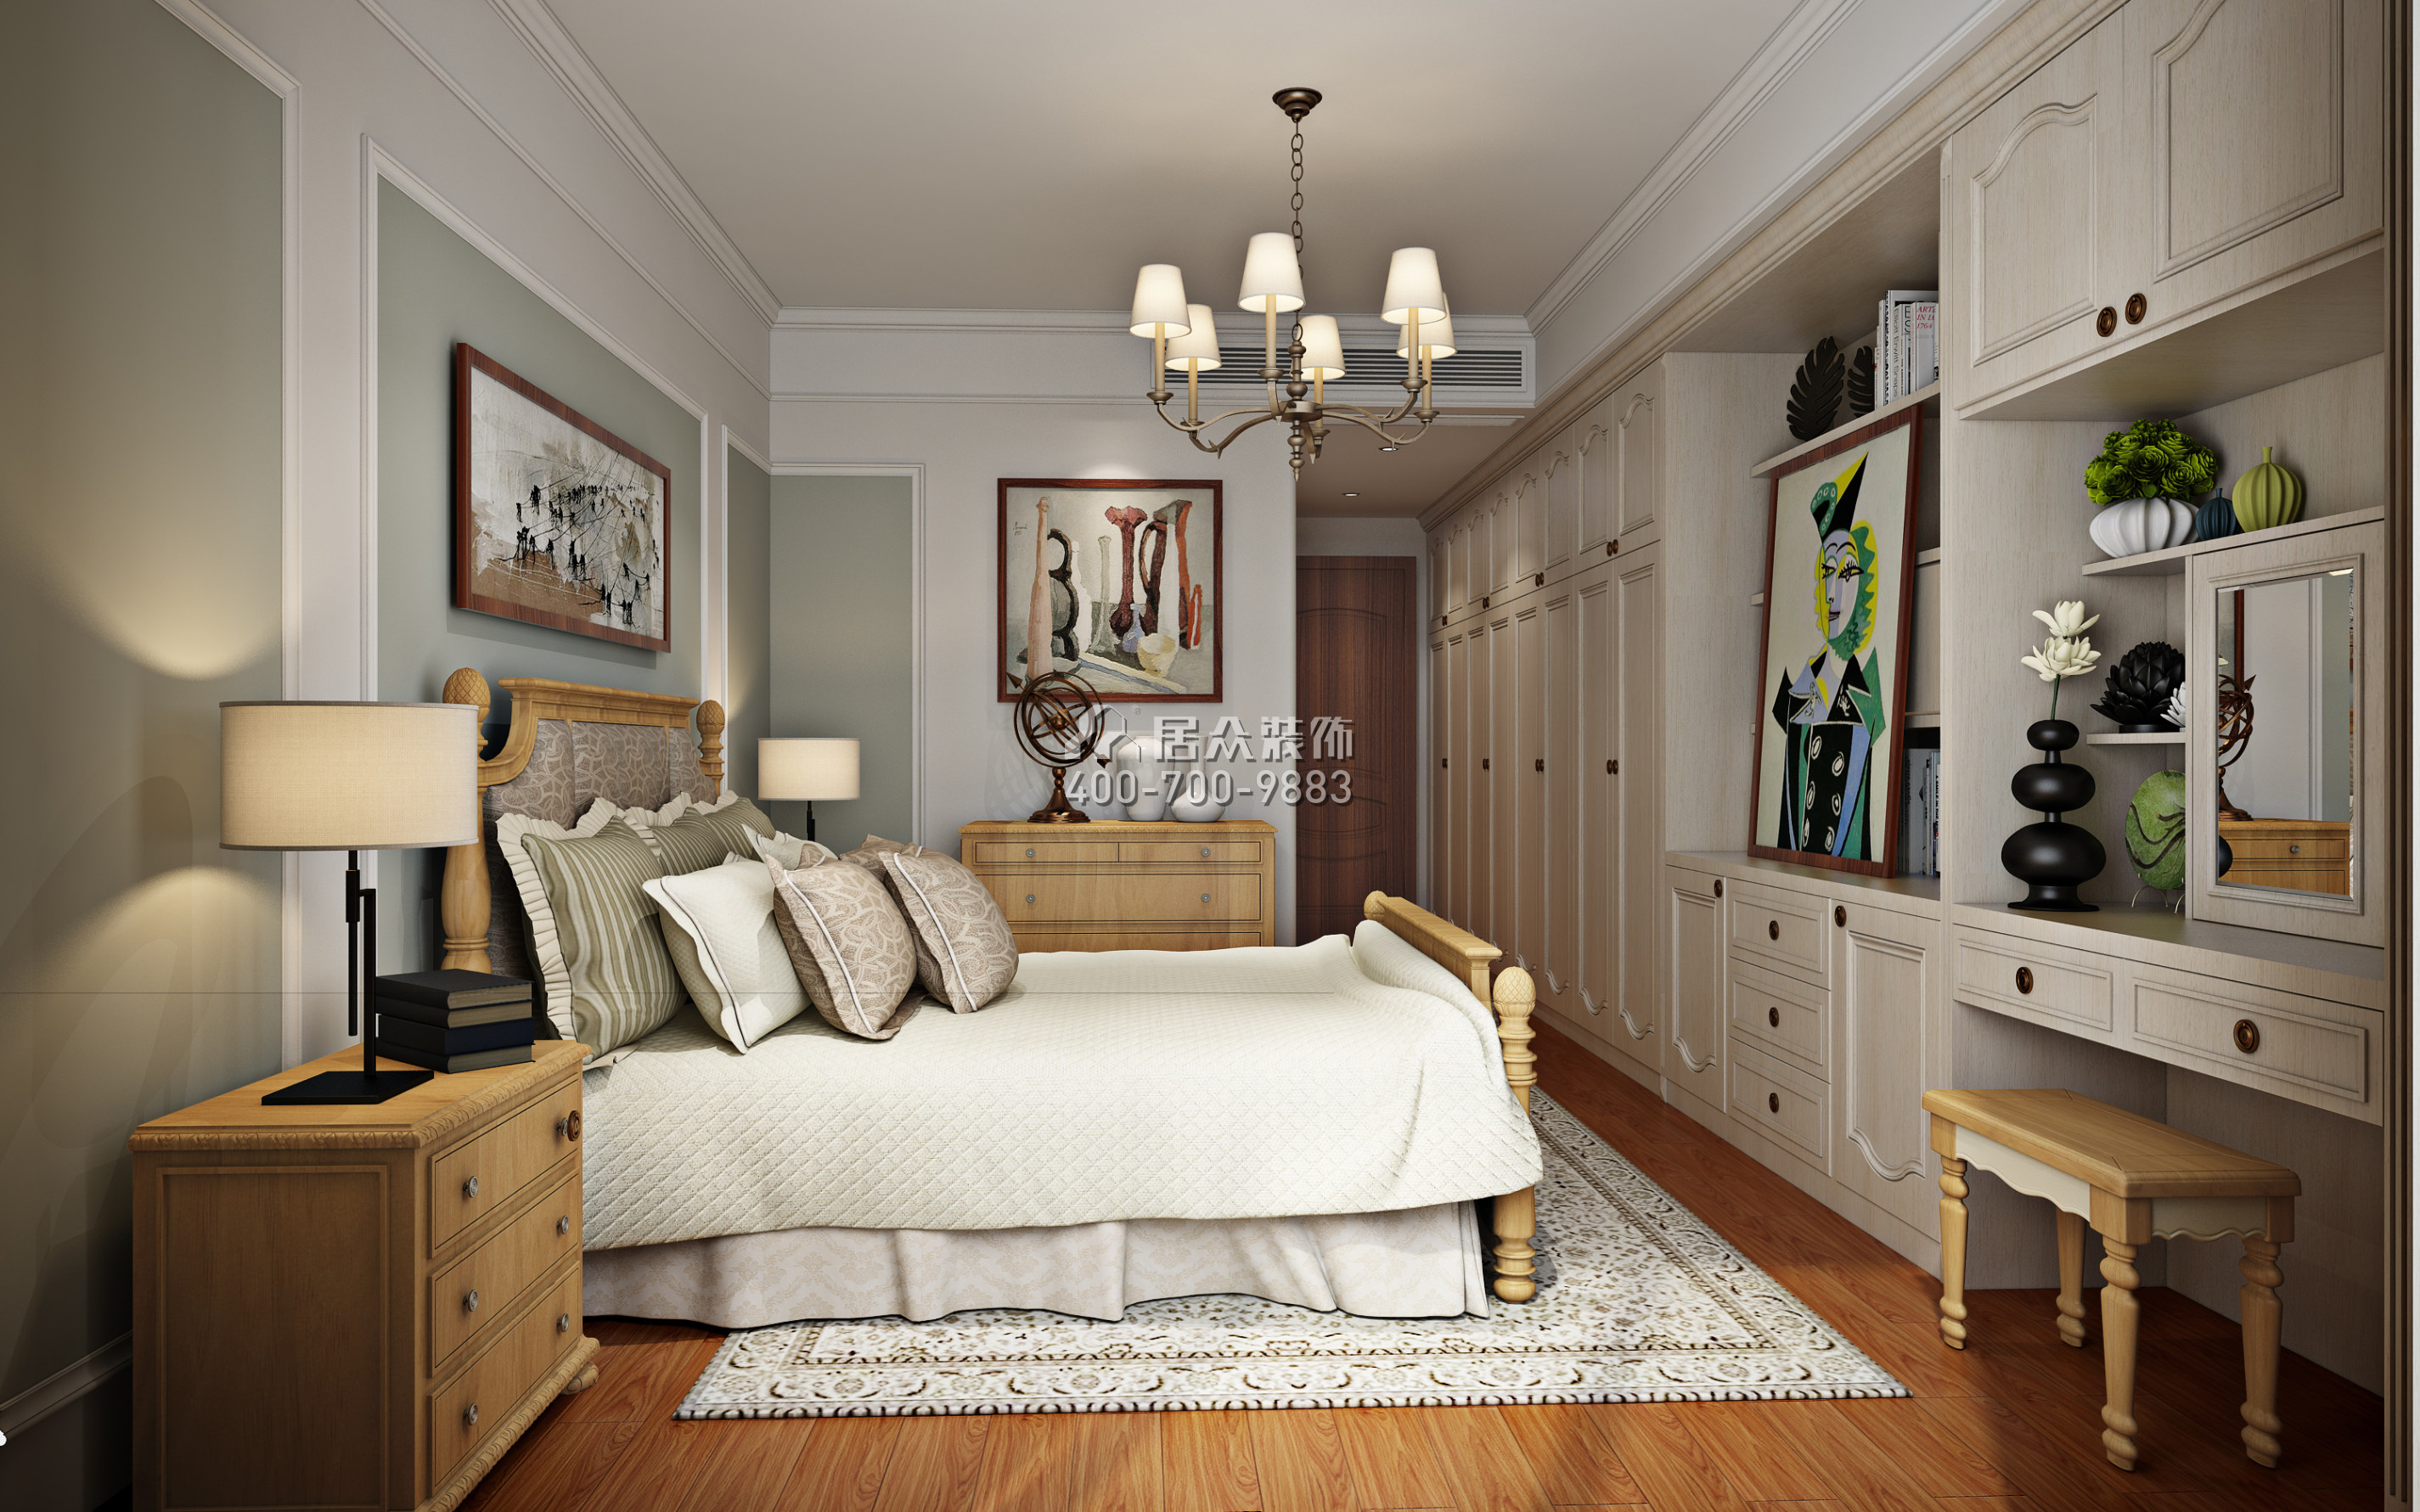 湖畔新城180平方米美式风格平层户型卧室装修效果图